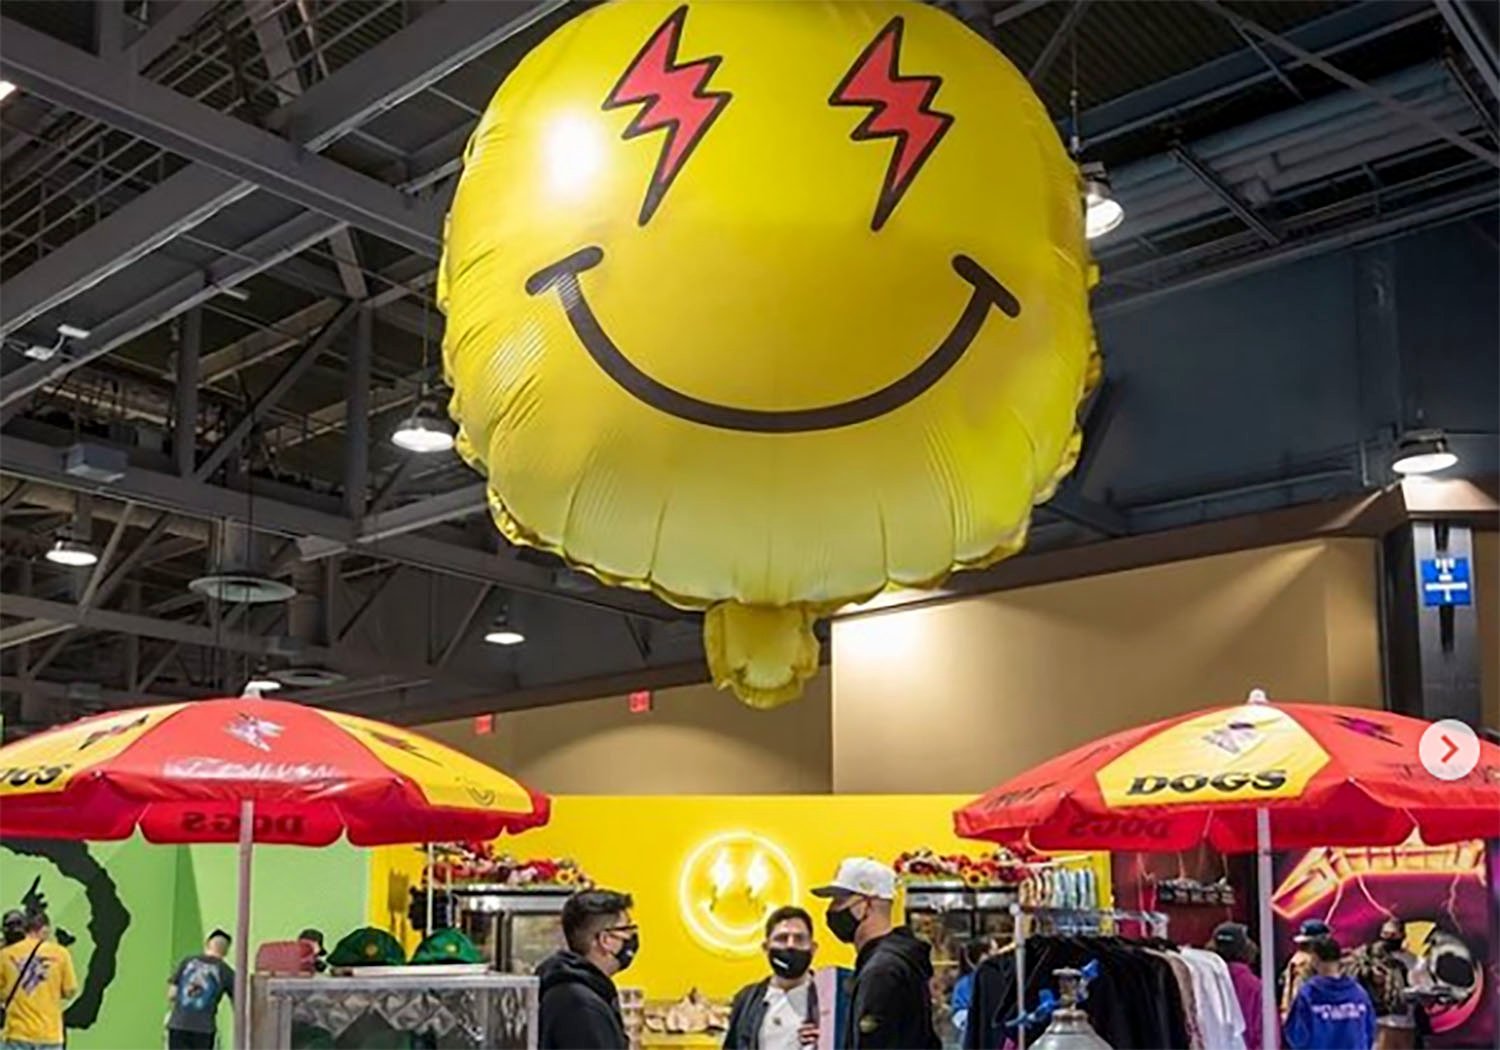 giant-inflatable-balloon